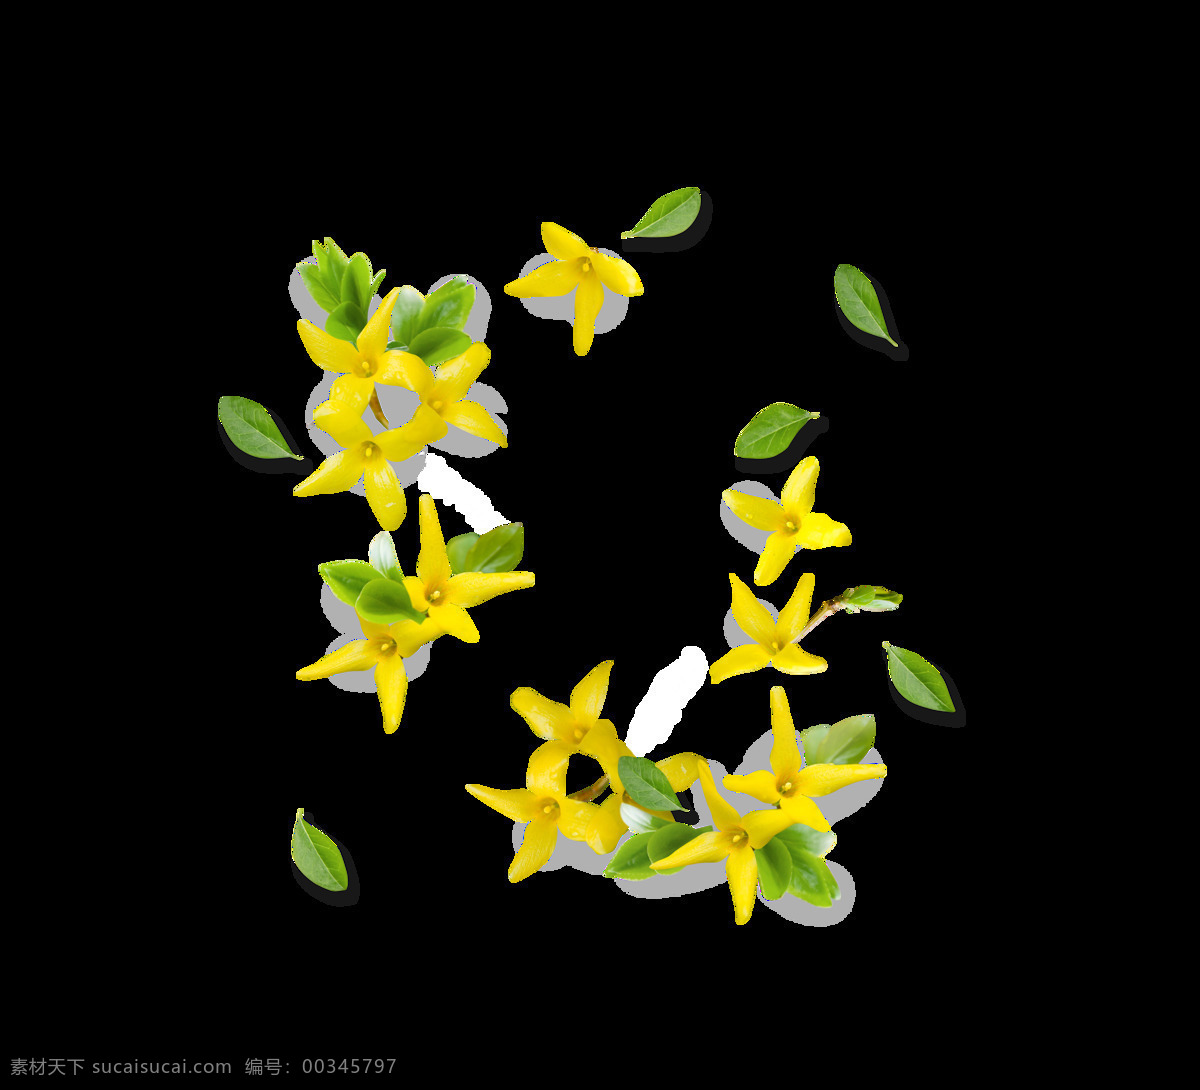 黄色 小 清新 花朵 装饰 小清新 叶子 春天 栀子花 白色